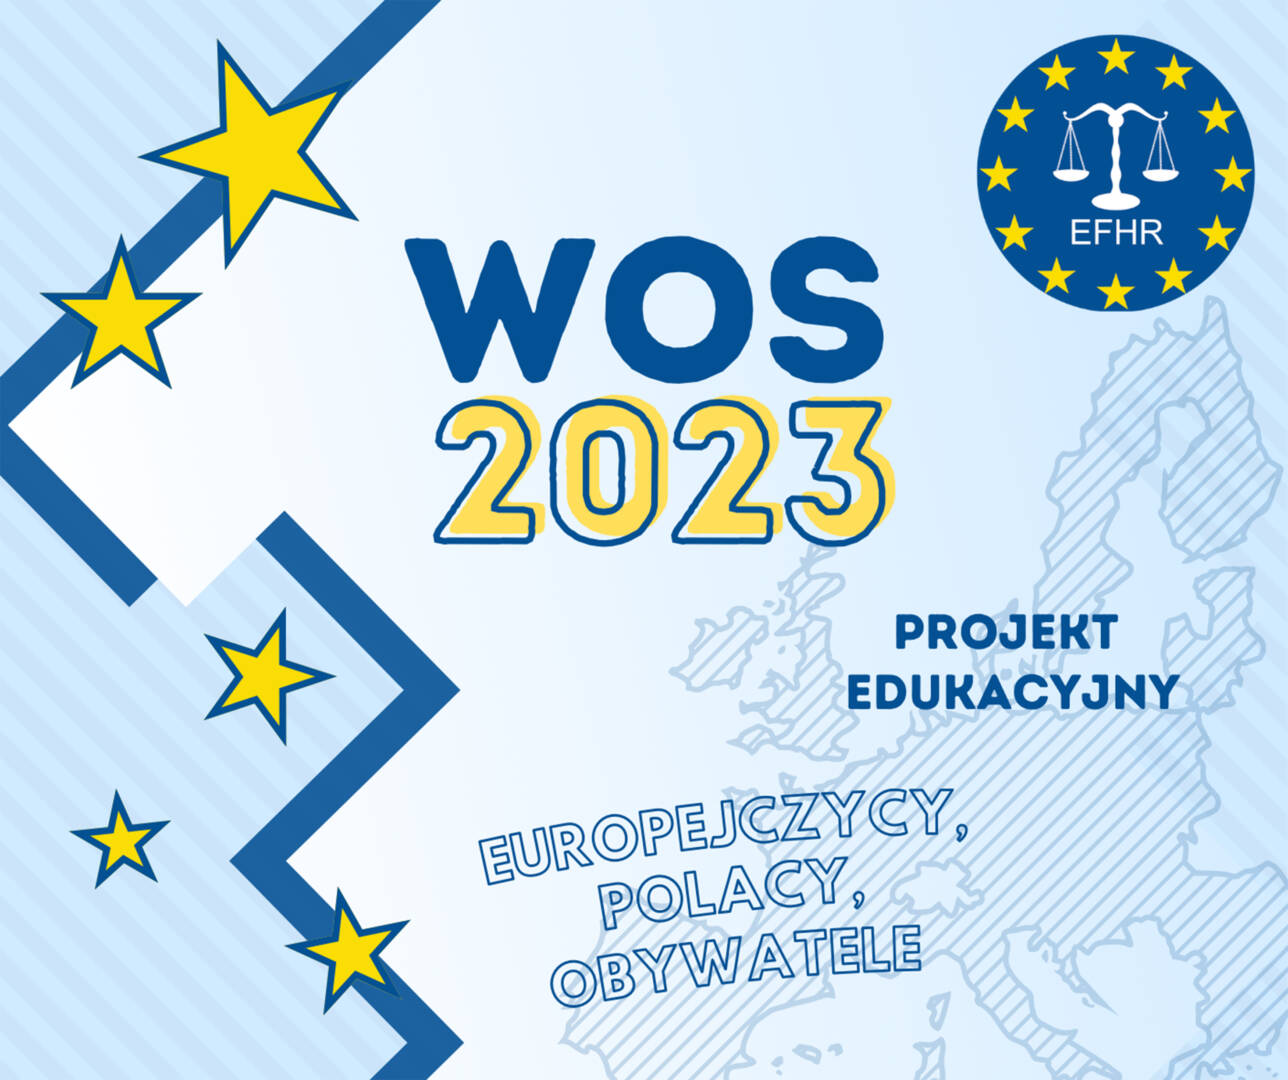 Wracamy! EFHR rozpoczyna VI edycję projektu „Europejczycy, Polacy, Obywatele”!